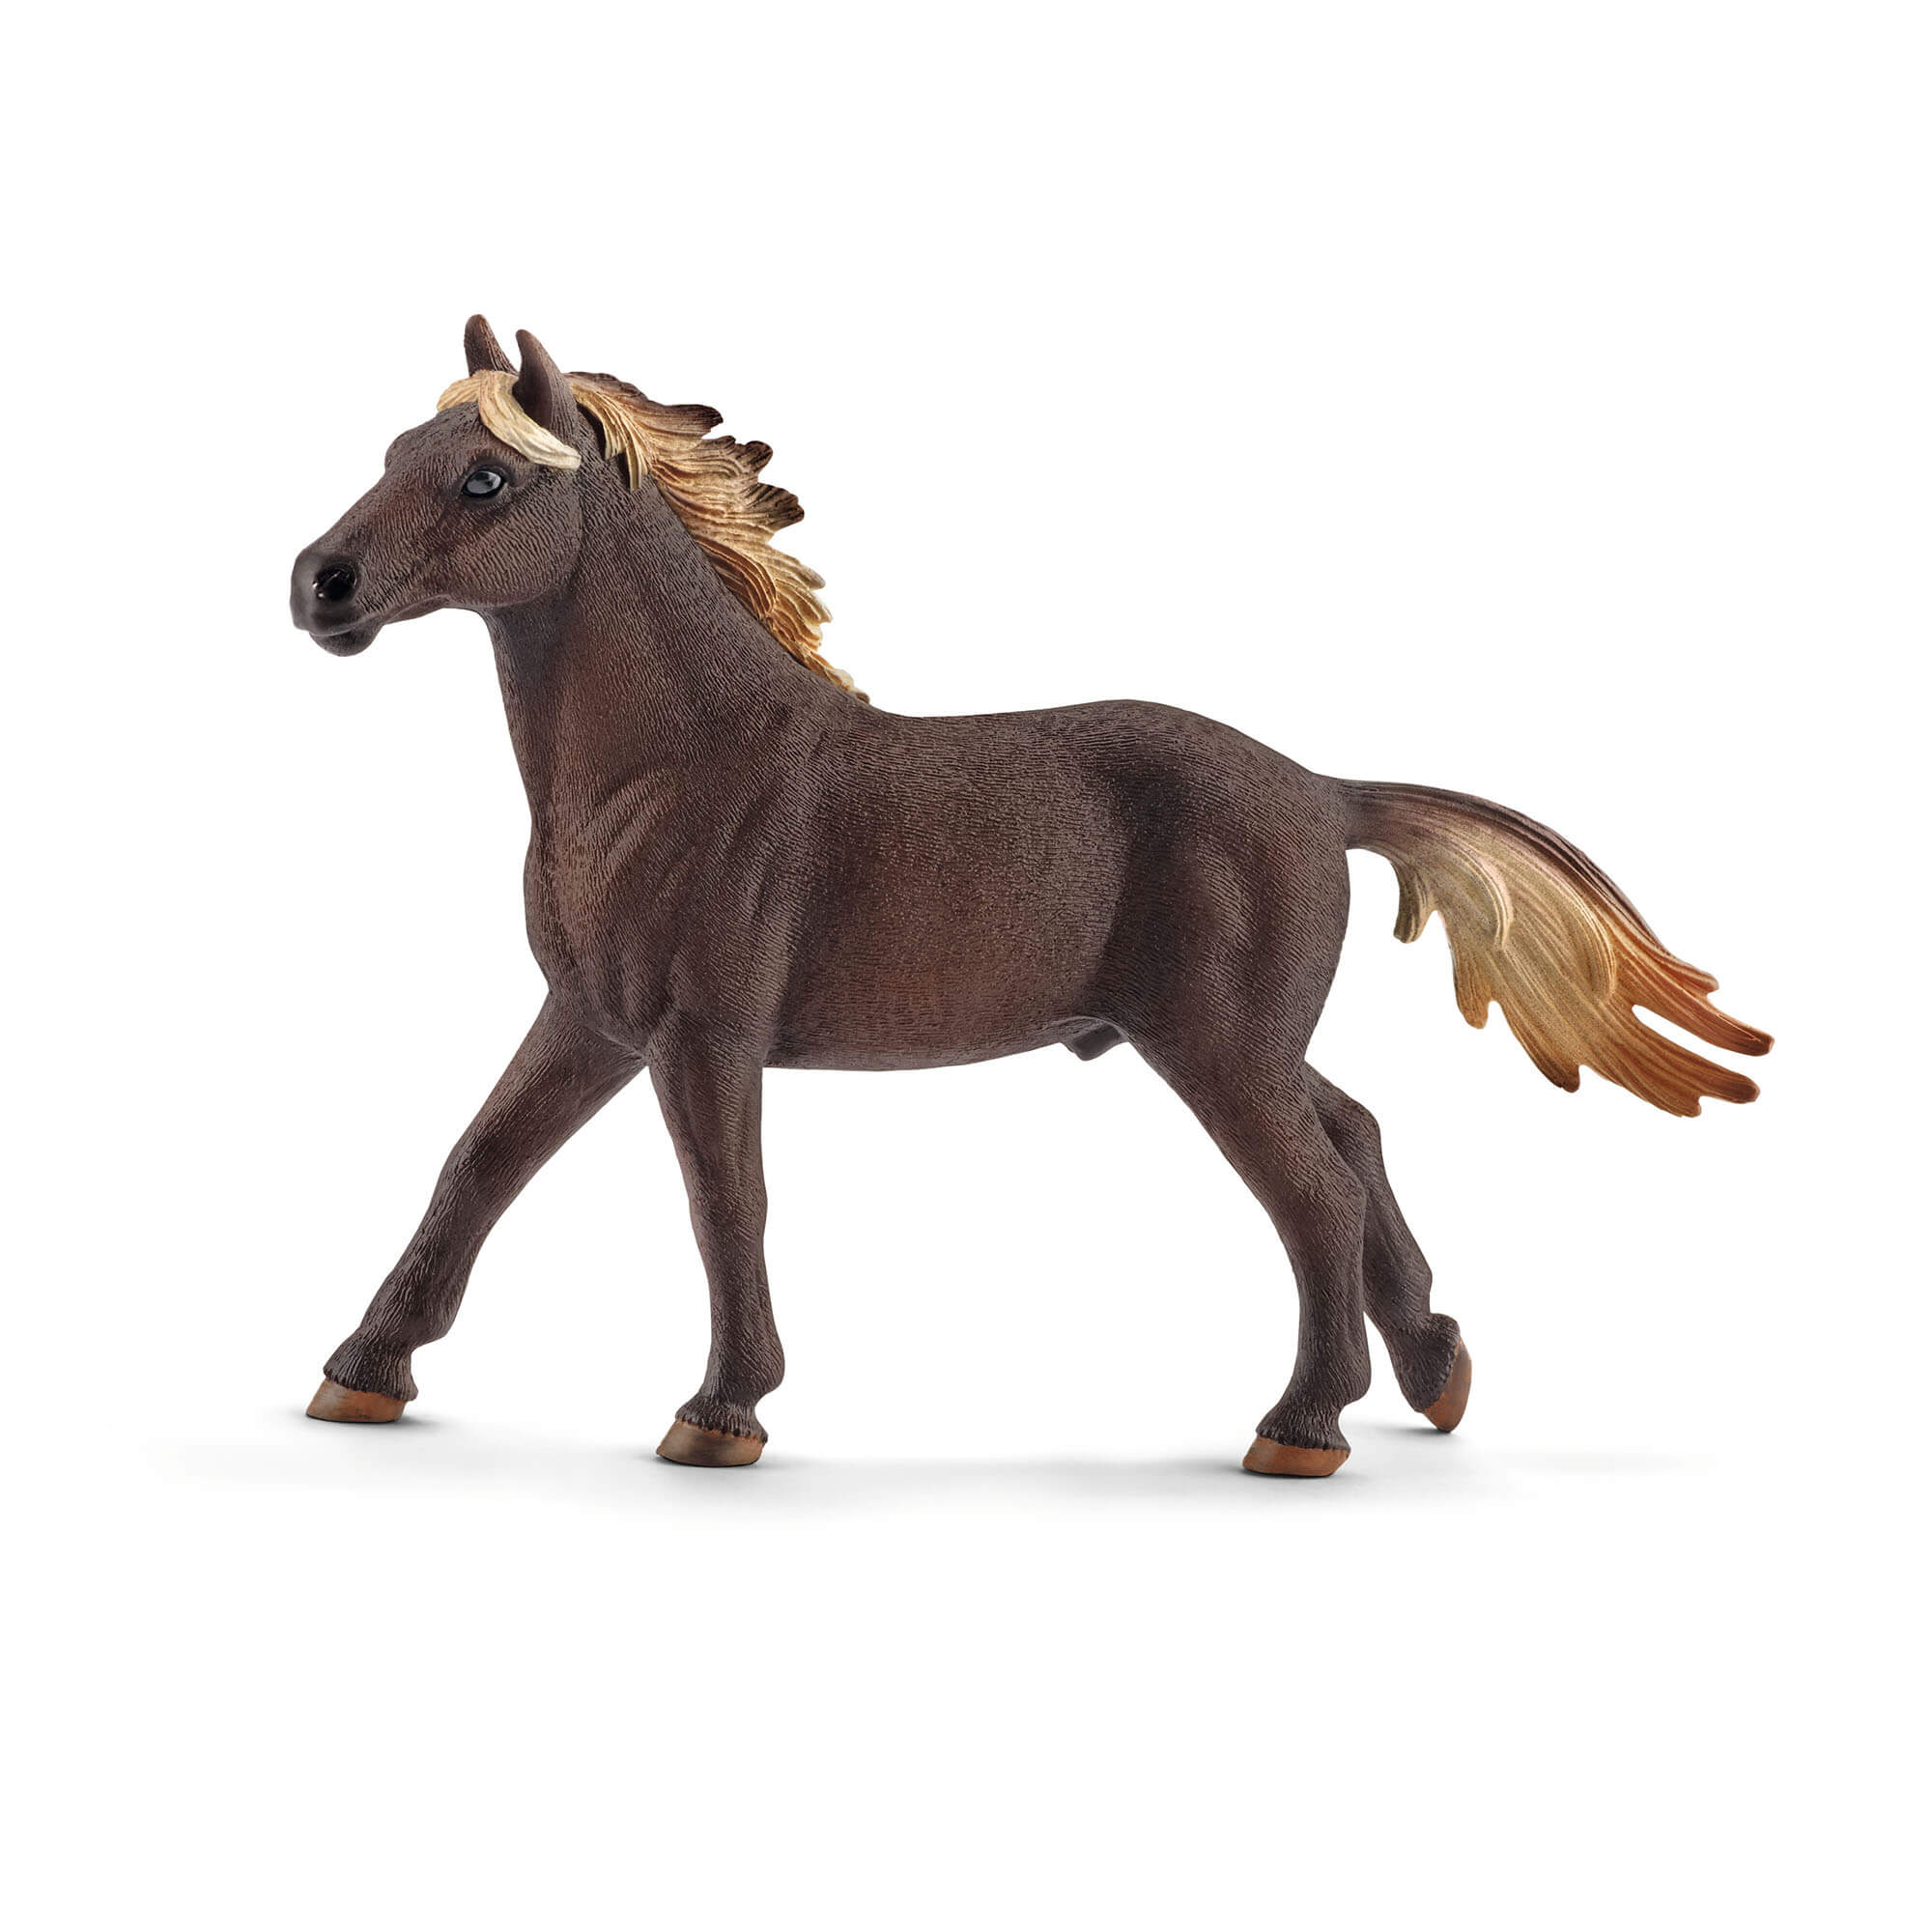 Schleich Farm World Mustang Stallion Animal Figure